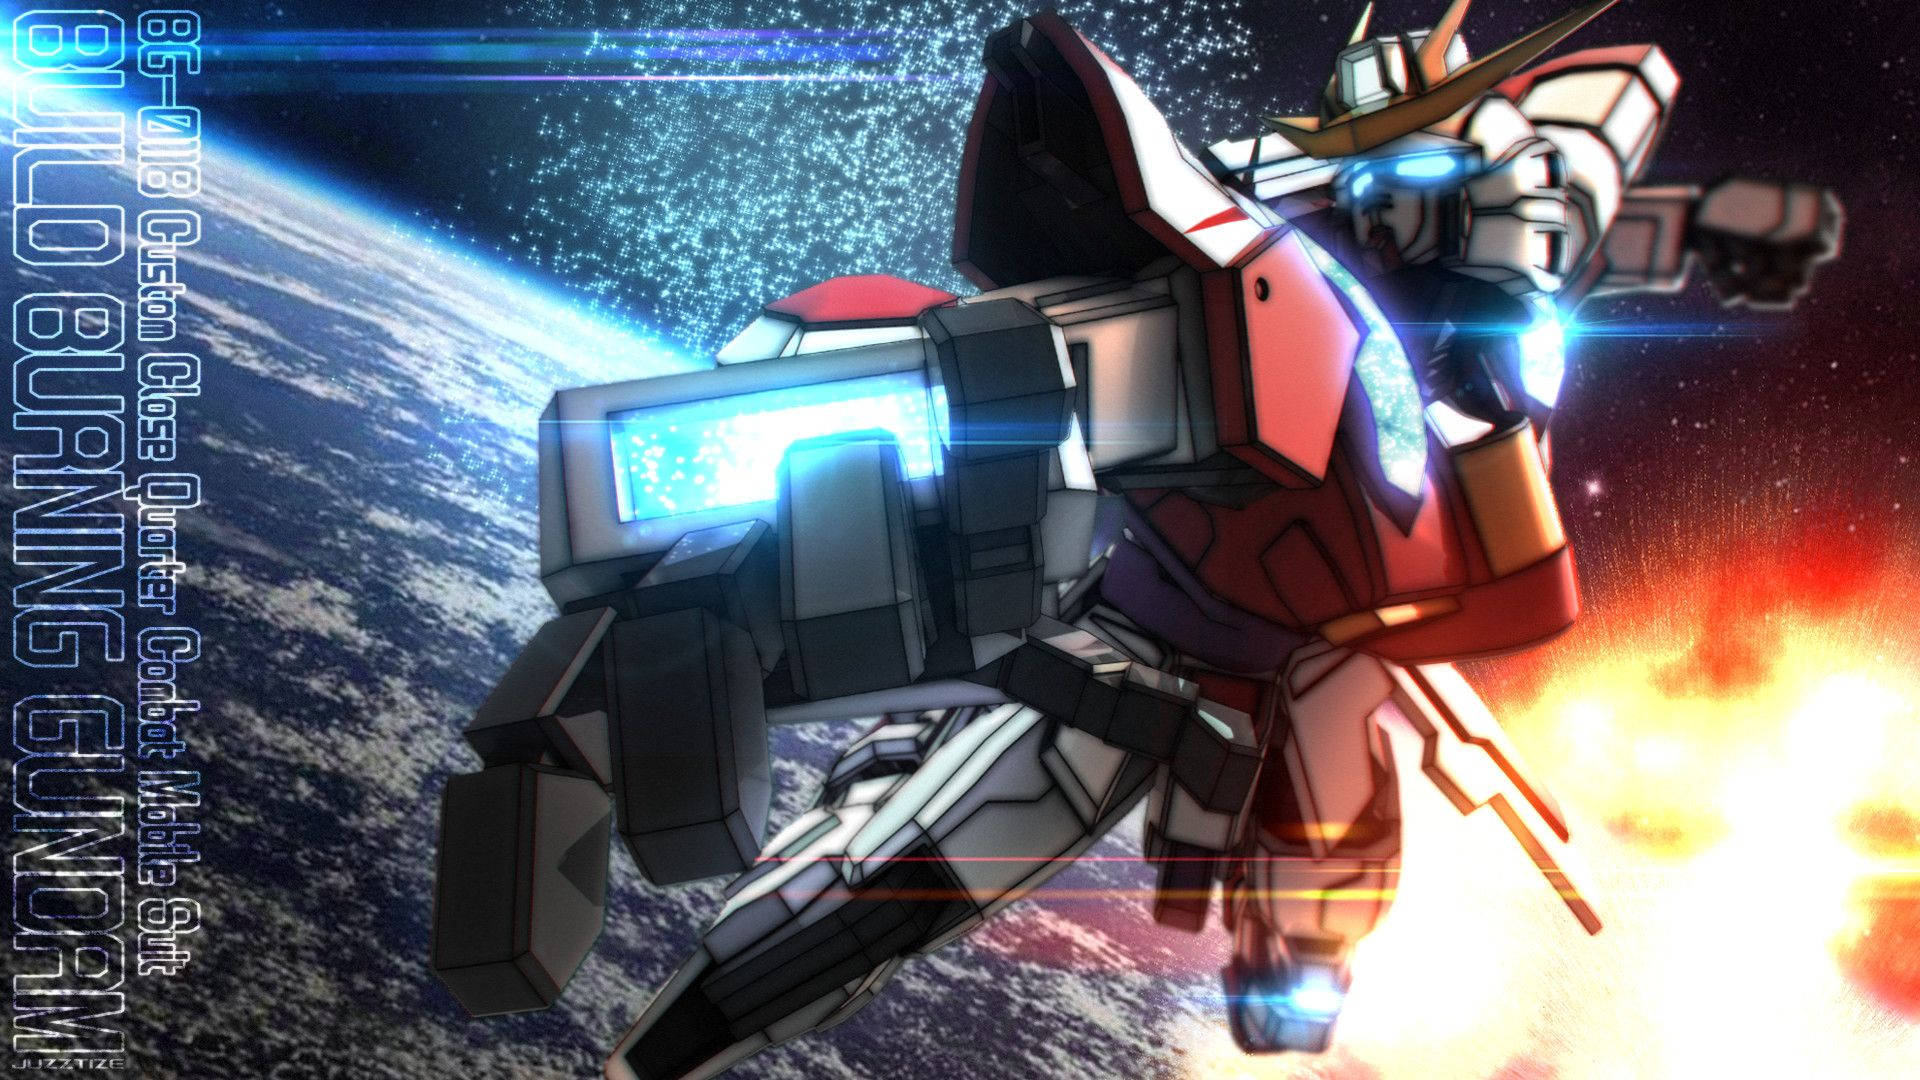 “The Burning-Build Gundam” Wallpaper